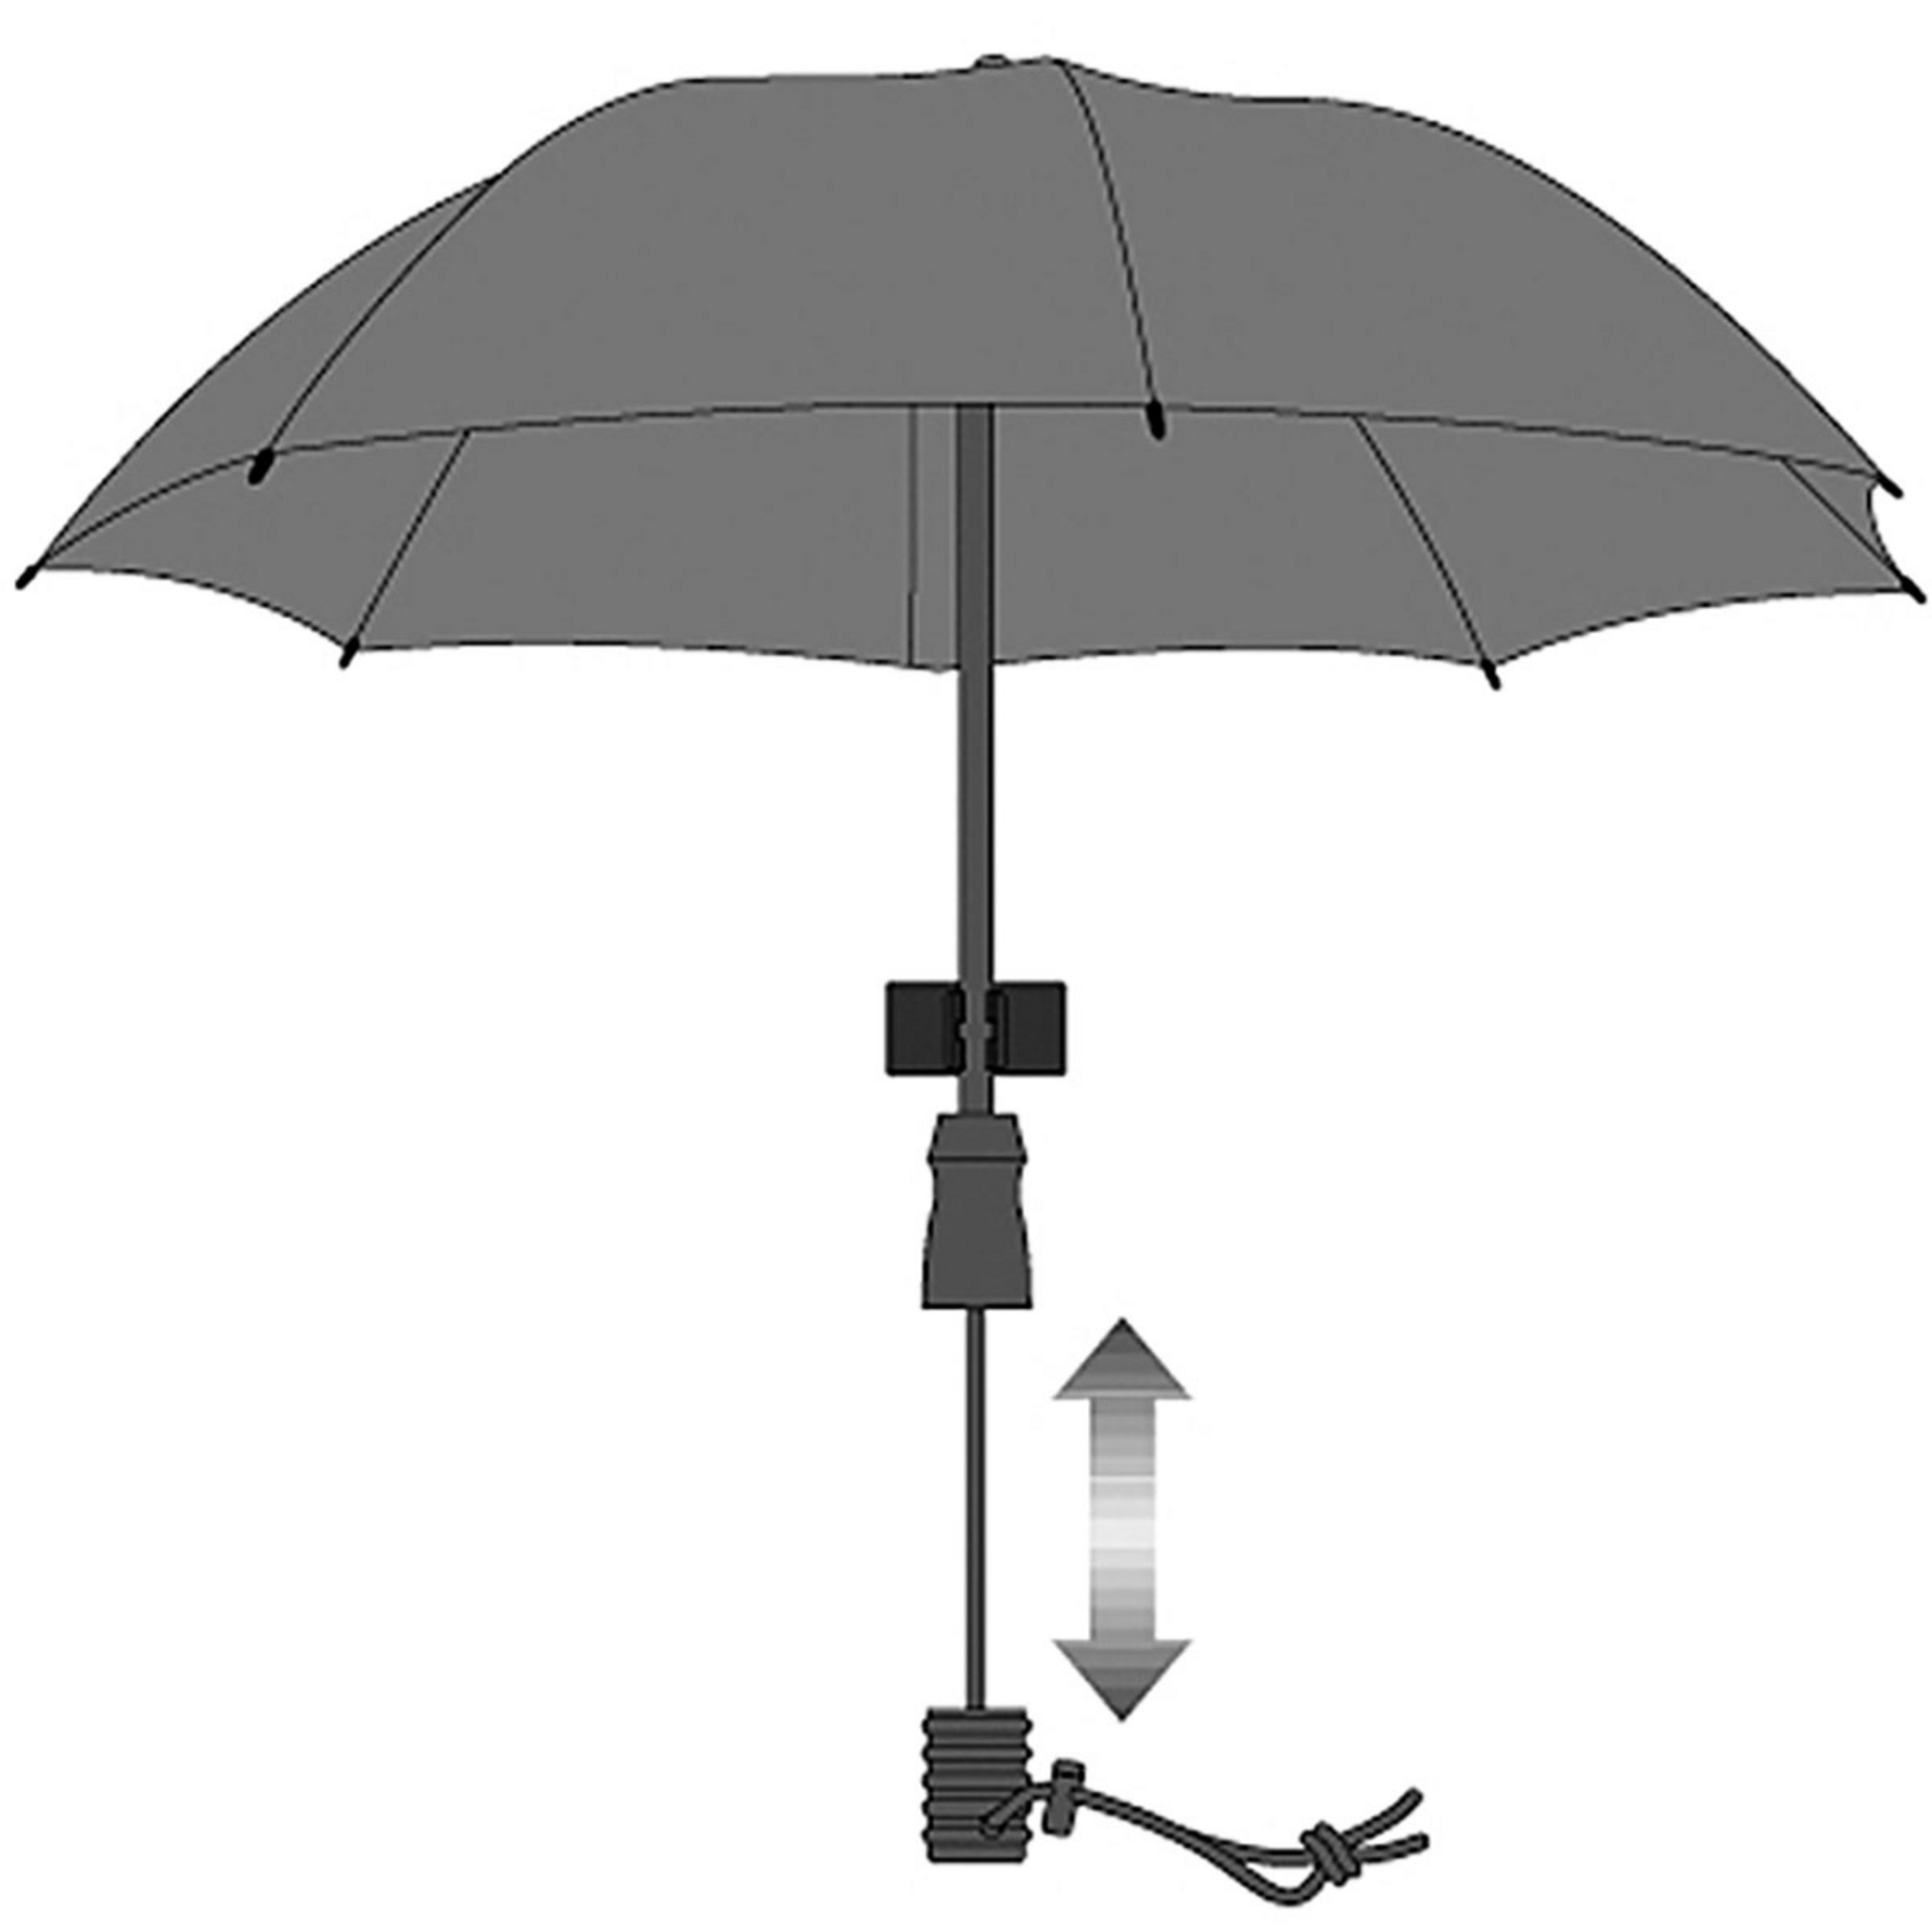 Euroschirm Swing Handsfree Regenschirm kaufen | Bergzeit